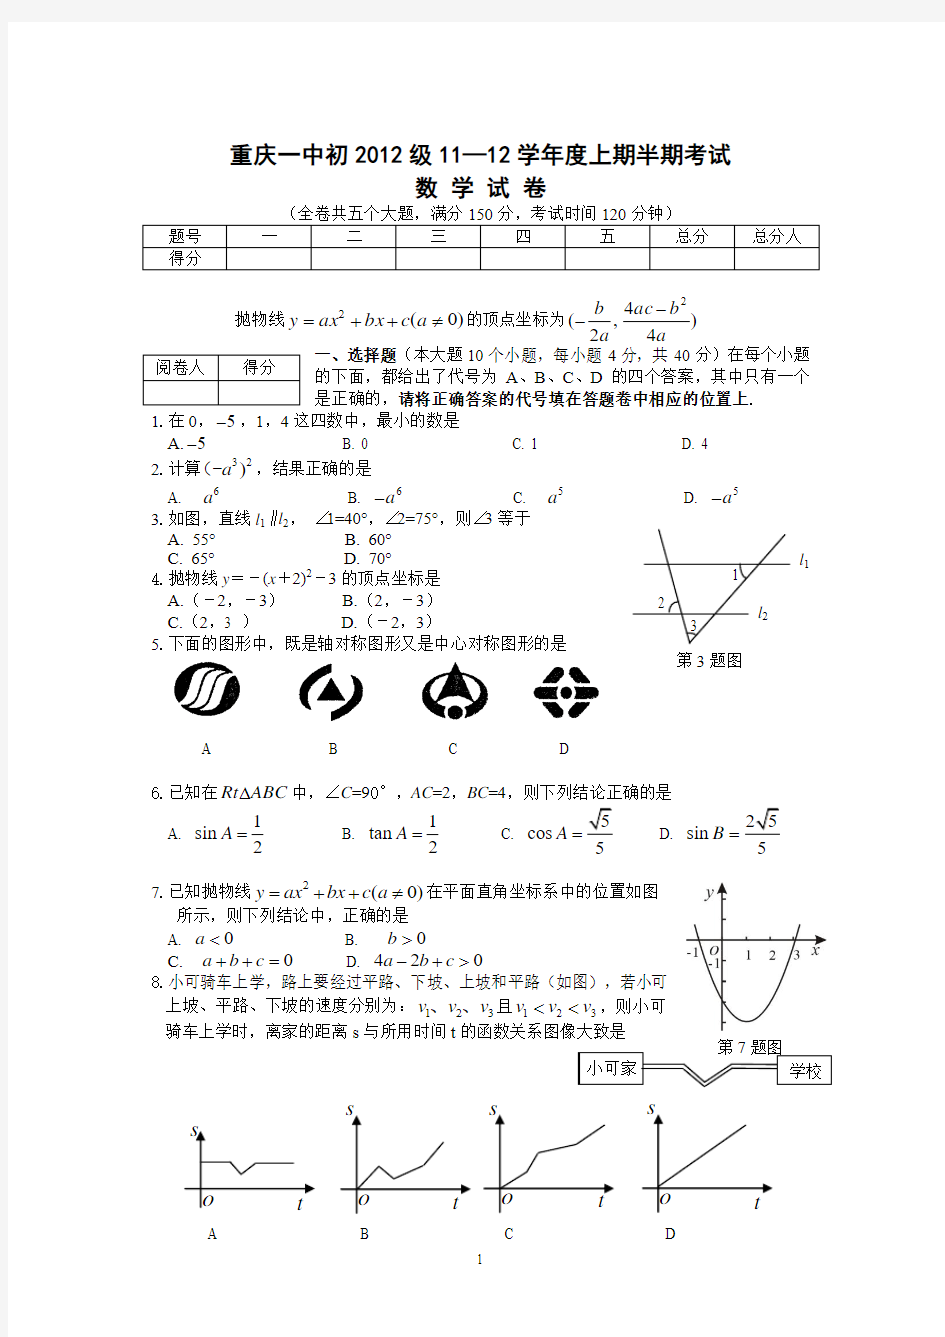 重庆一中初2012级11-12学年(上)半期试题——数学